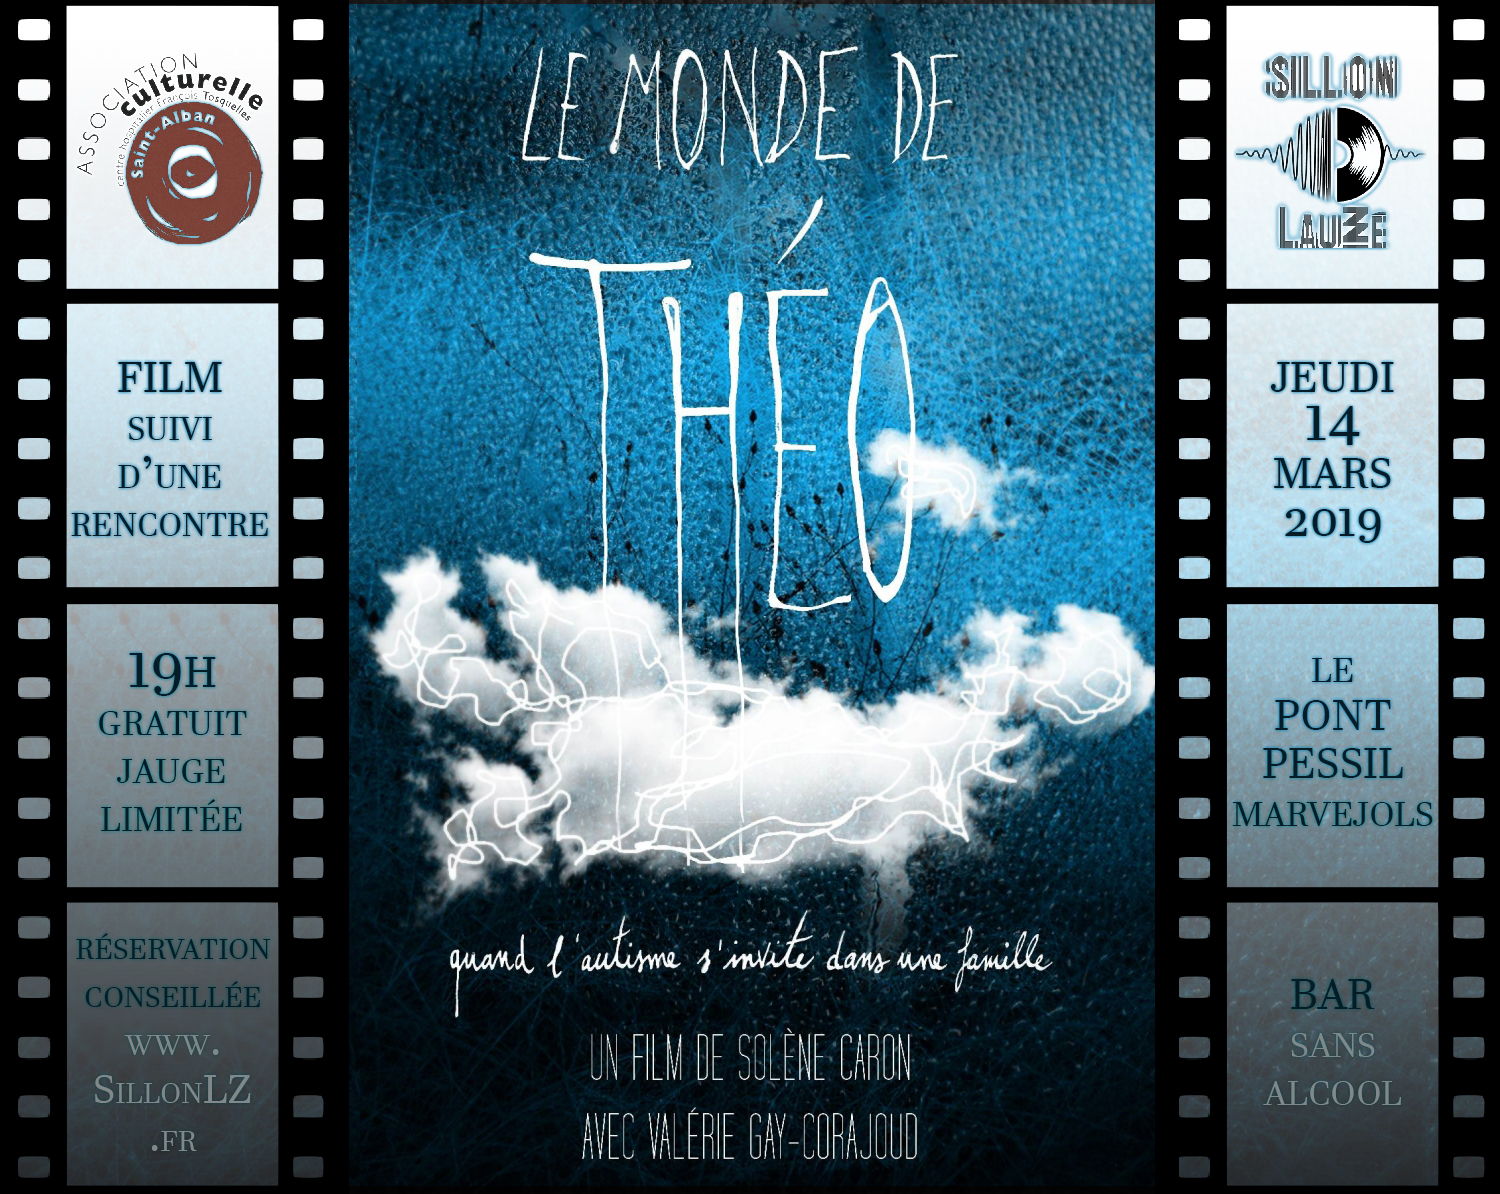 Le Monde de Théo, film et rencontre autour de l'autisme, mercredi 14 mars 2019 au Sillon Lauzé.